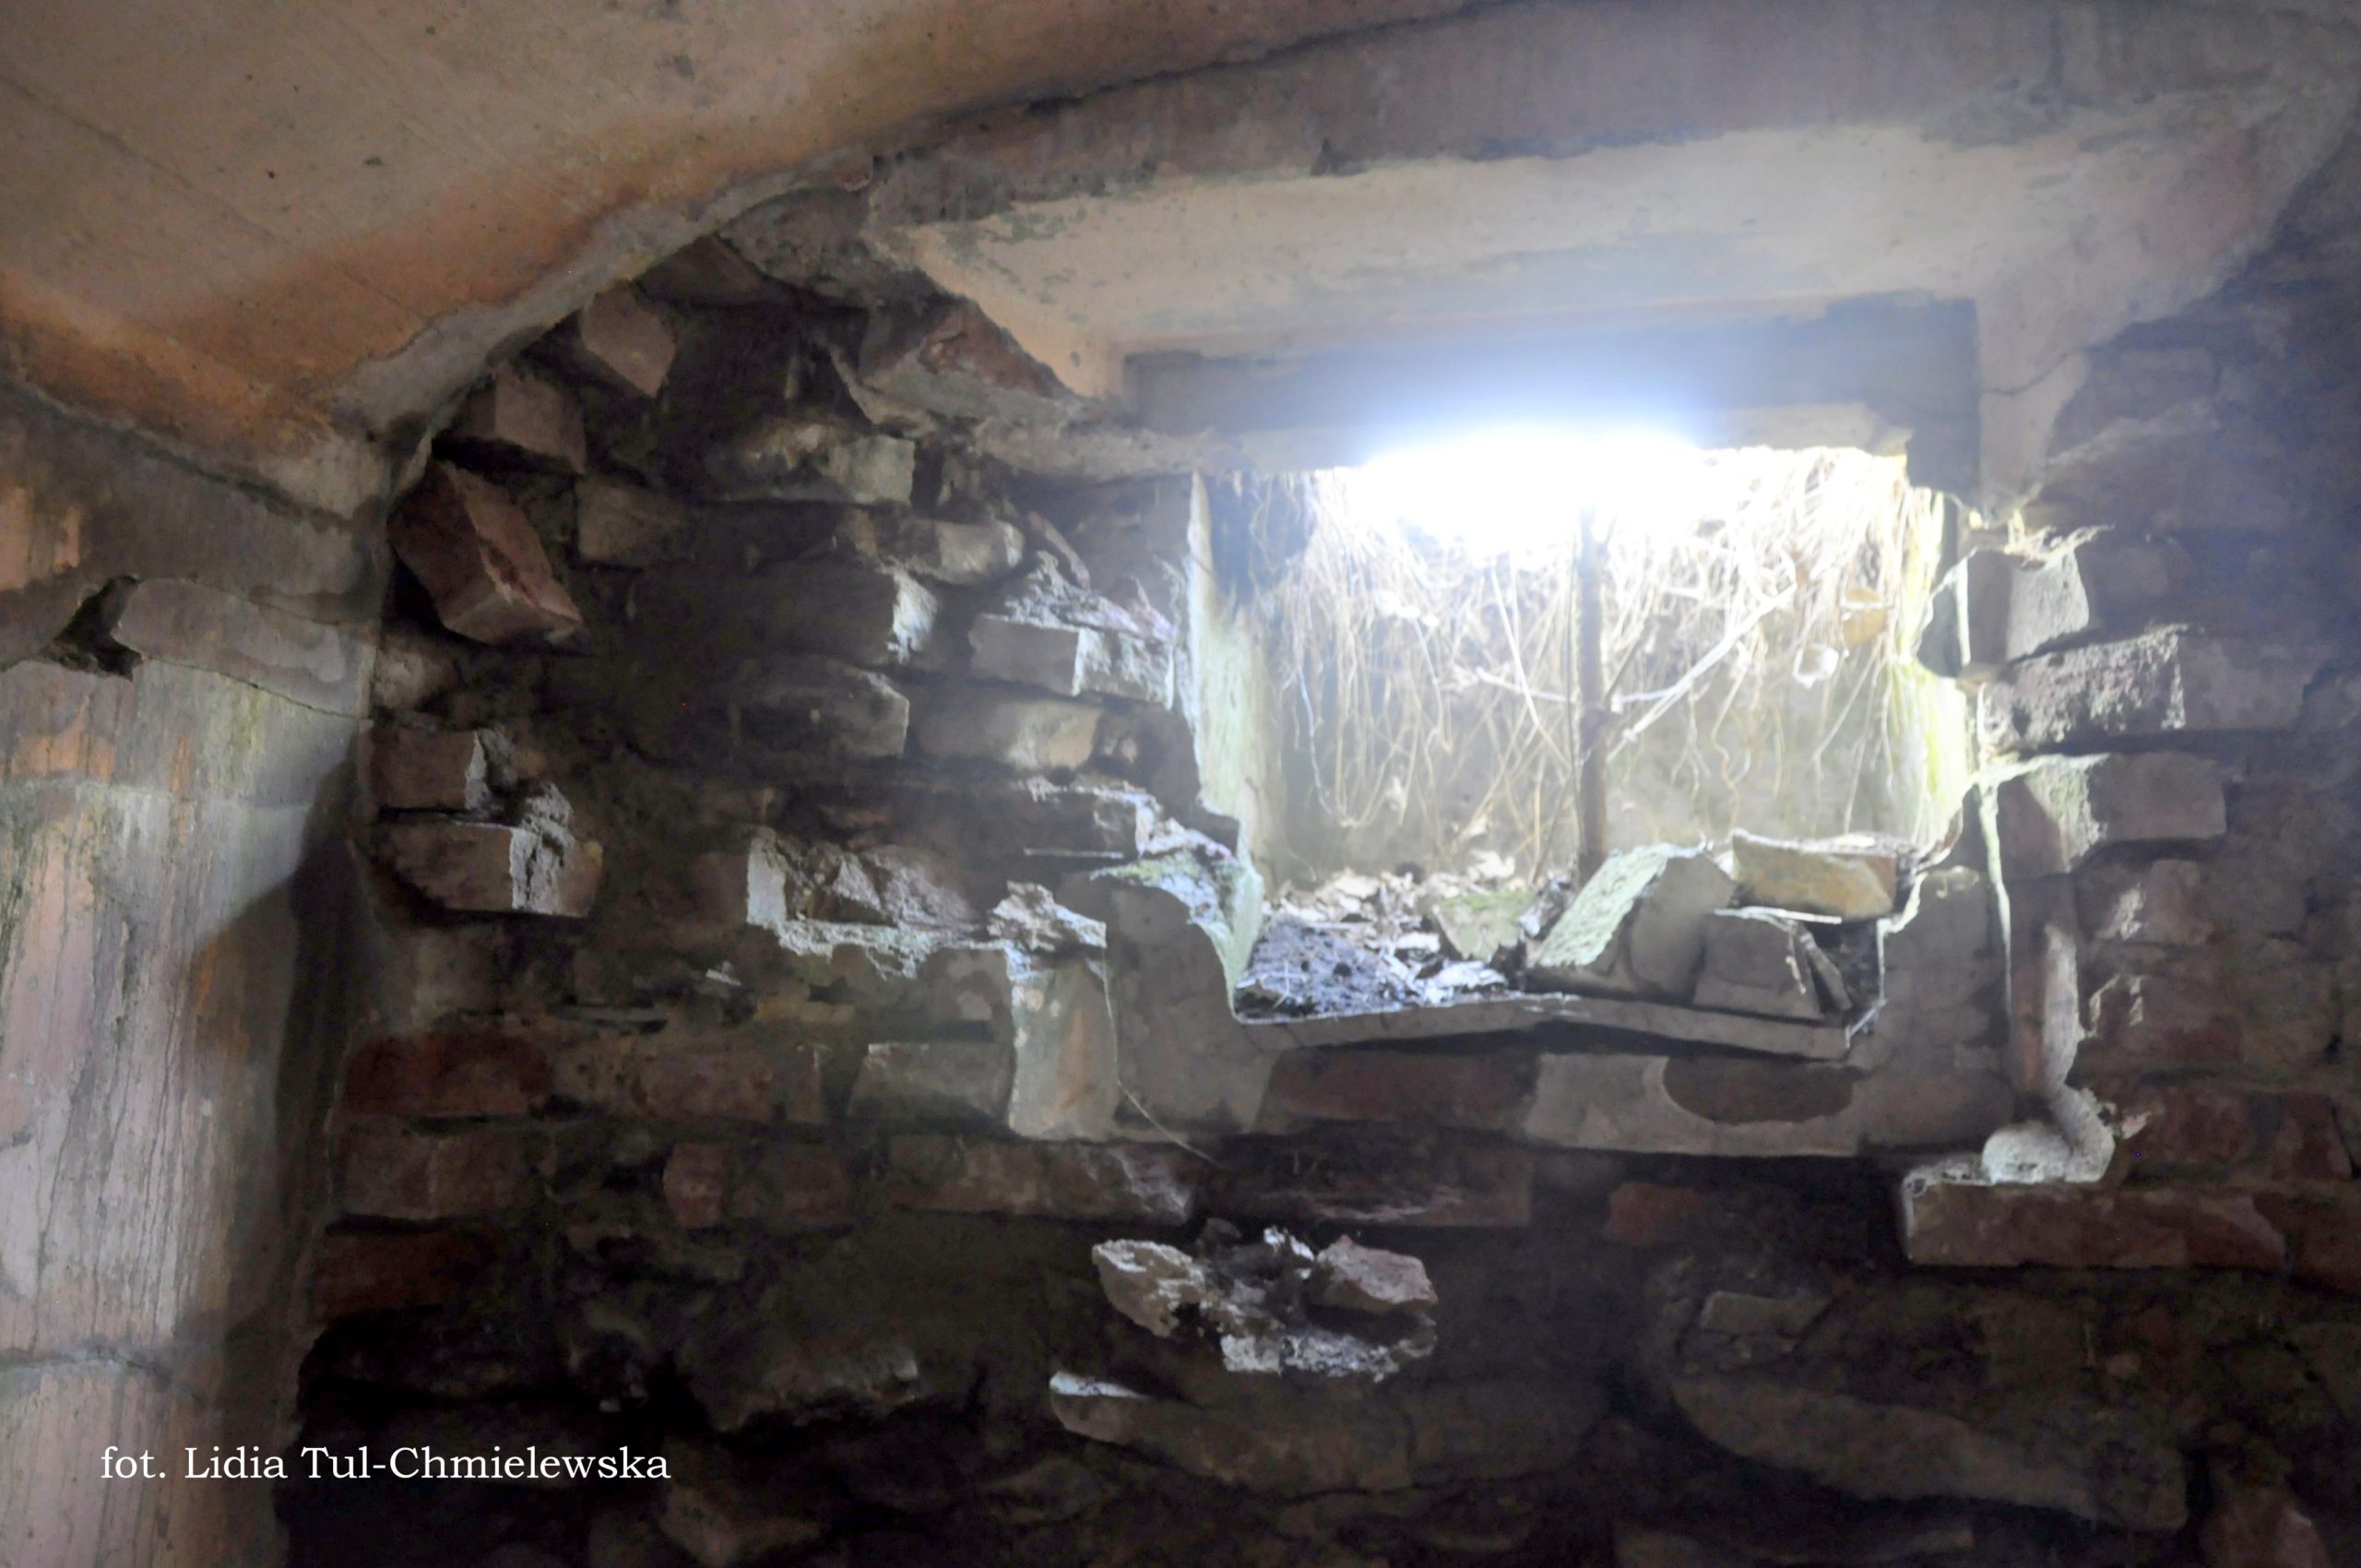 Ruiny strażnicy niemieckiej Tworylne fot. Lidia Tul-Chmielewska